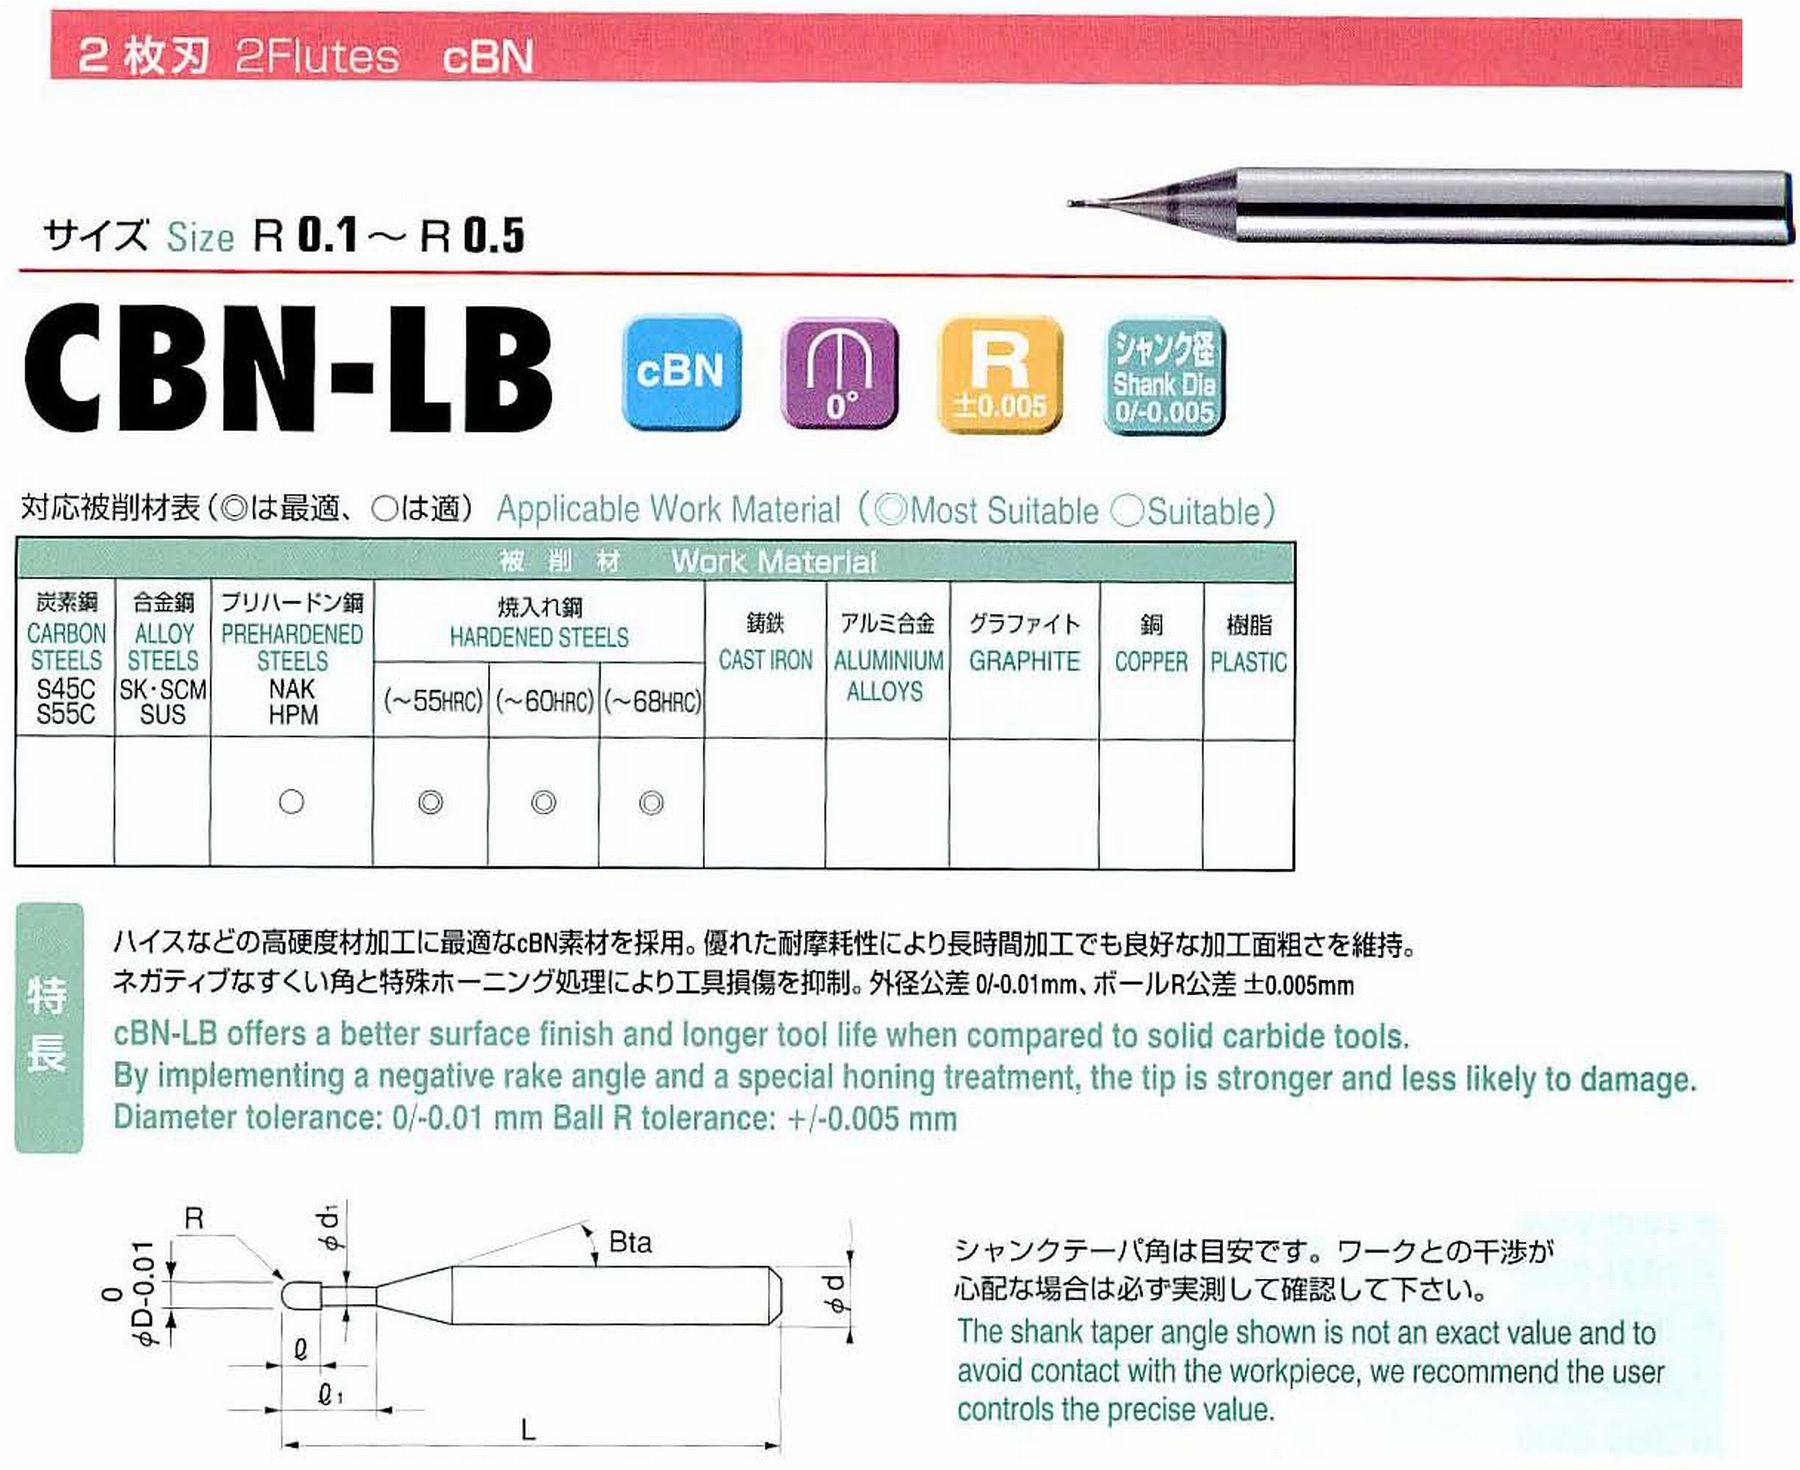 ユニオンツール 2枚刃 CBN-LB2010-020 ボール半径R0.5 有効長2 刃長0.8 首径0.96 シャンクテーパ角16° 全長45